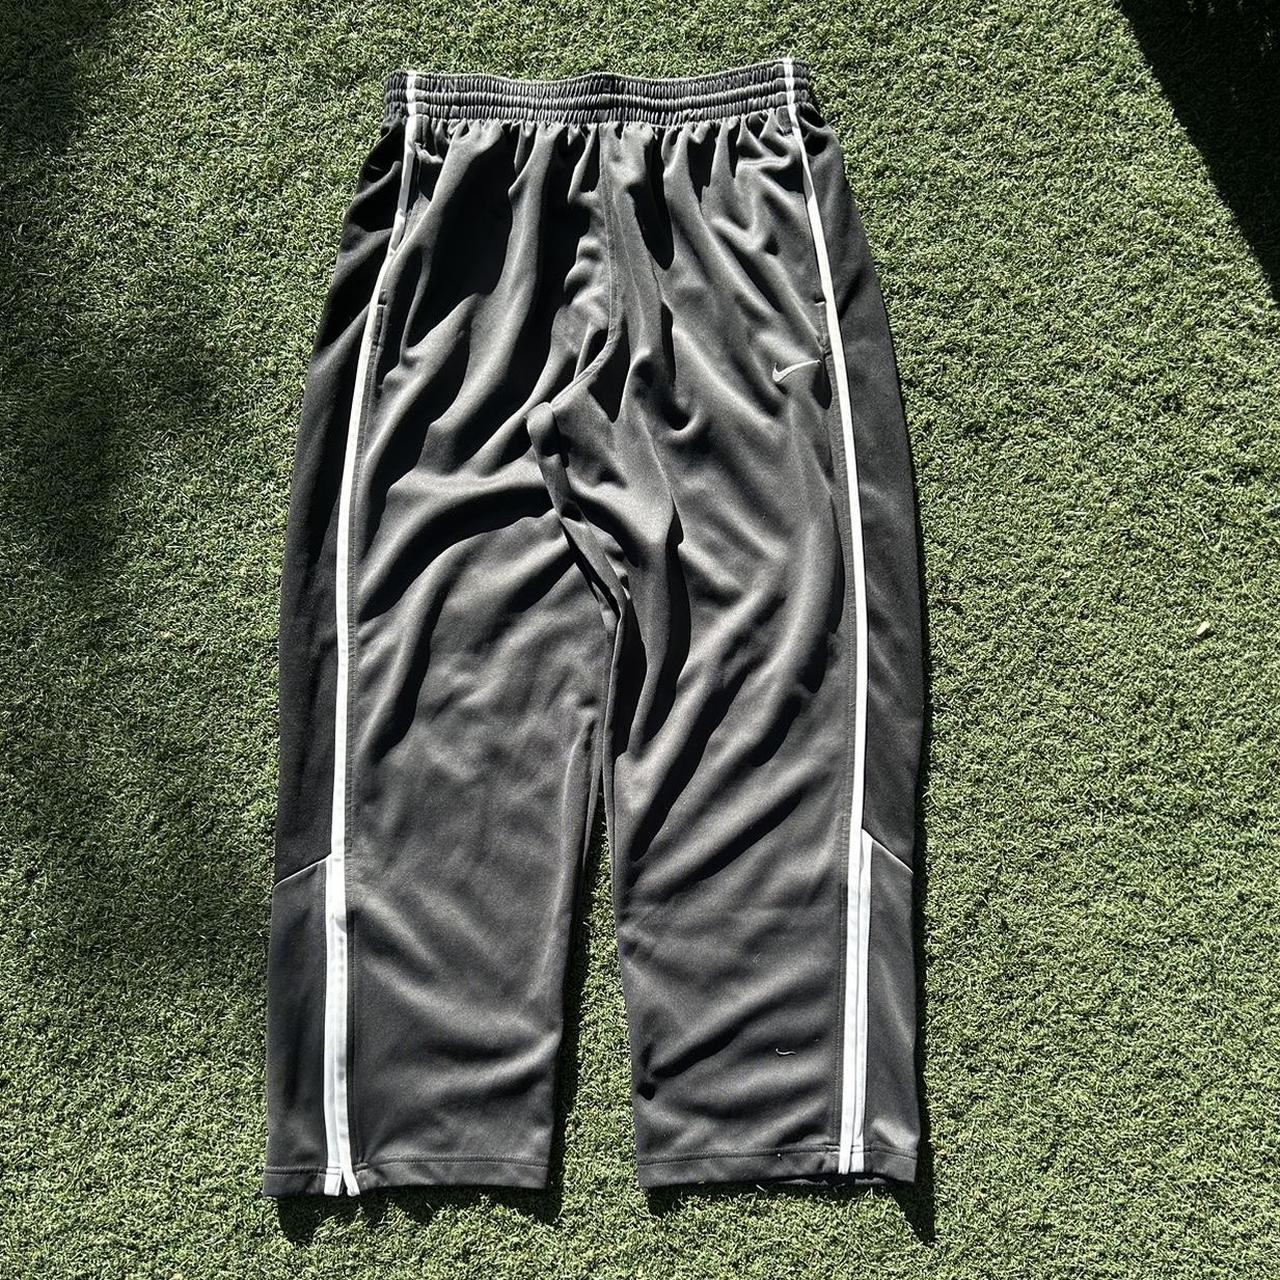 Vintage Grey Nike track pants. Adjustable fit. No... - Depop